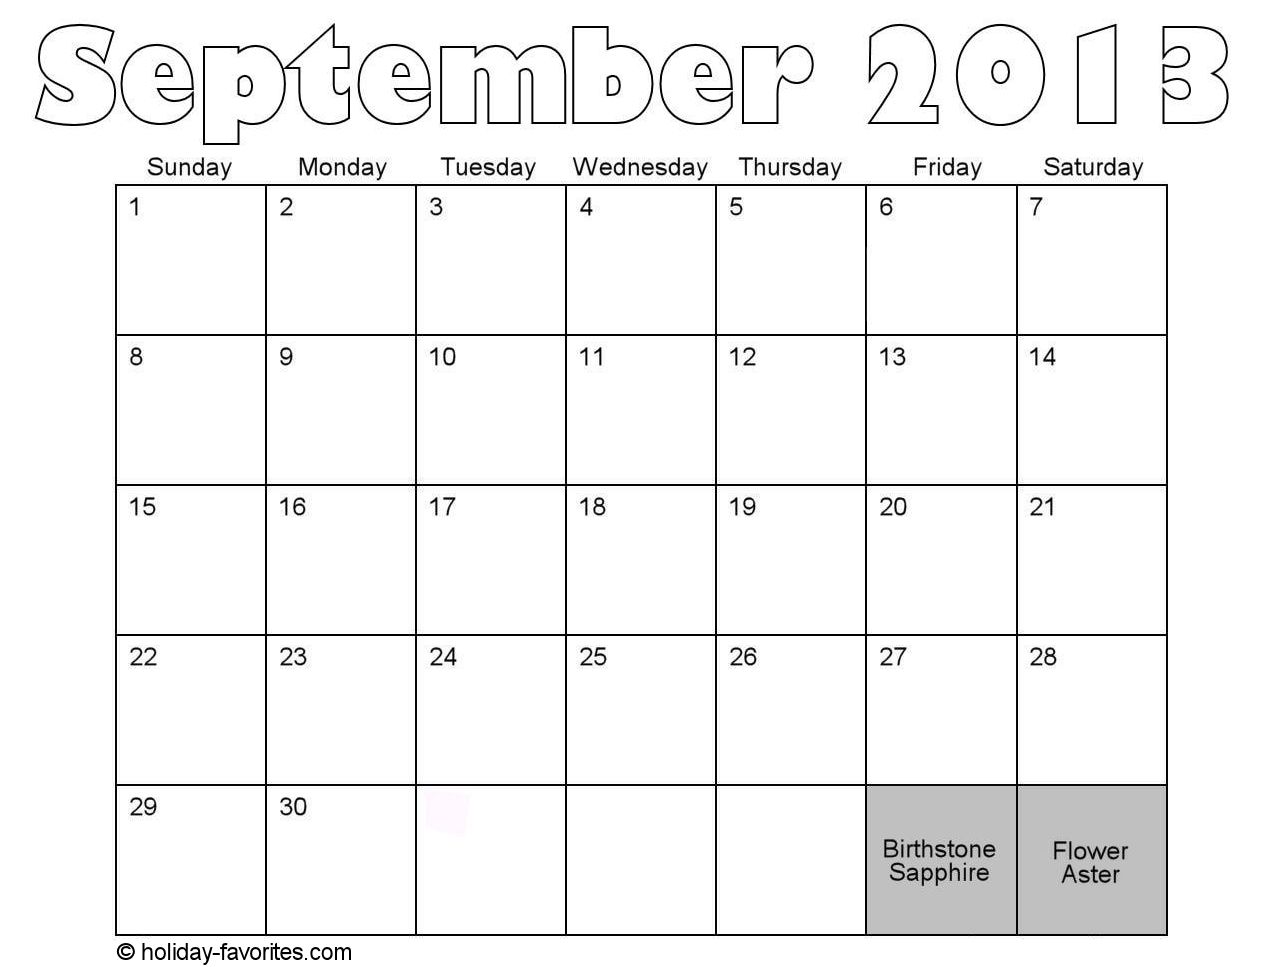 September 2013 Calendar Time Table